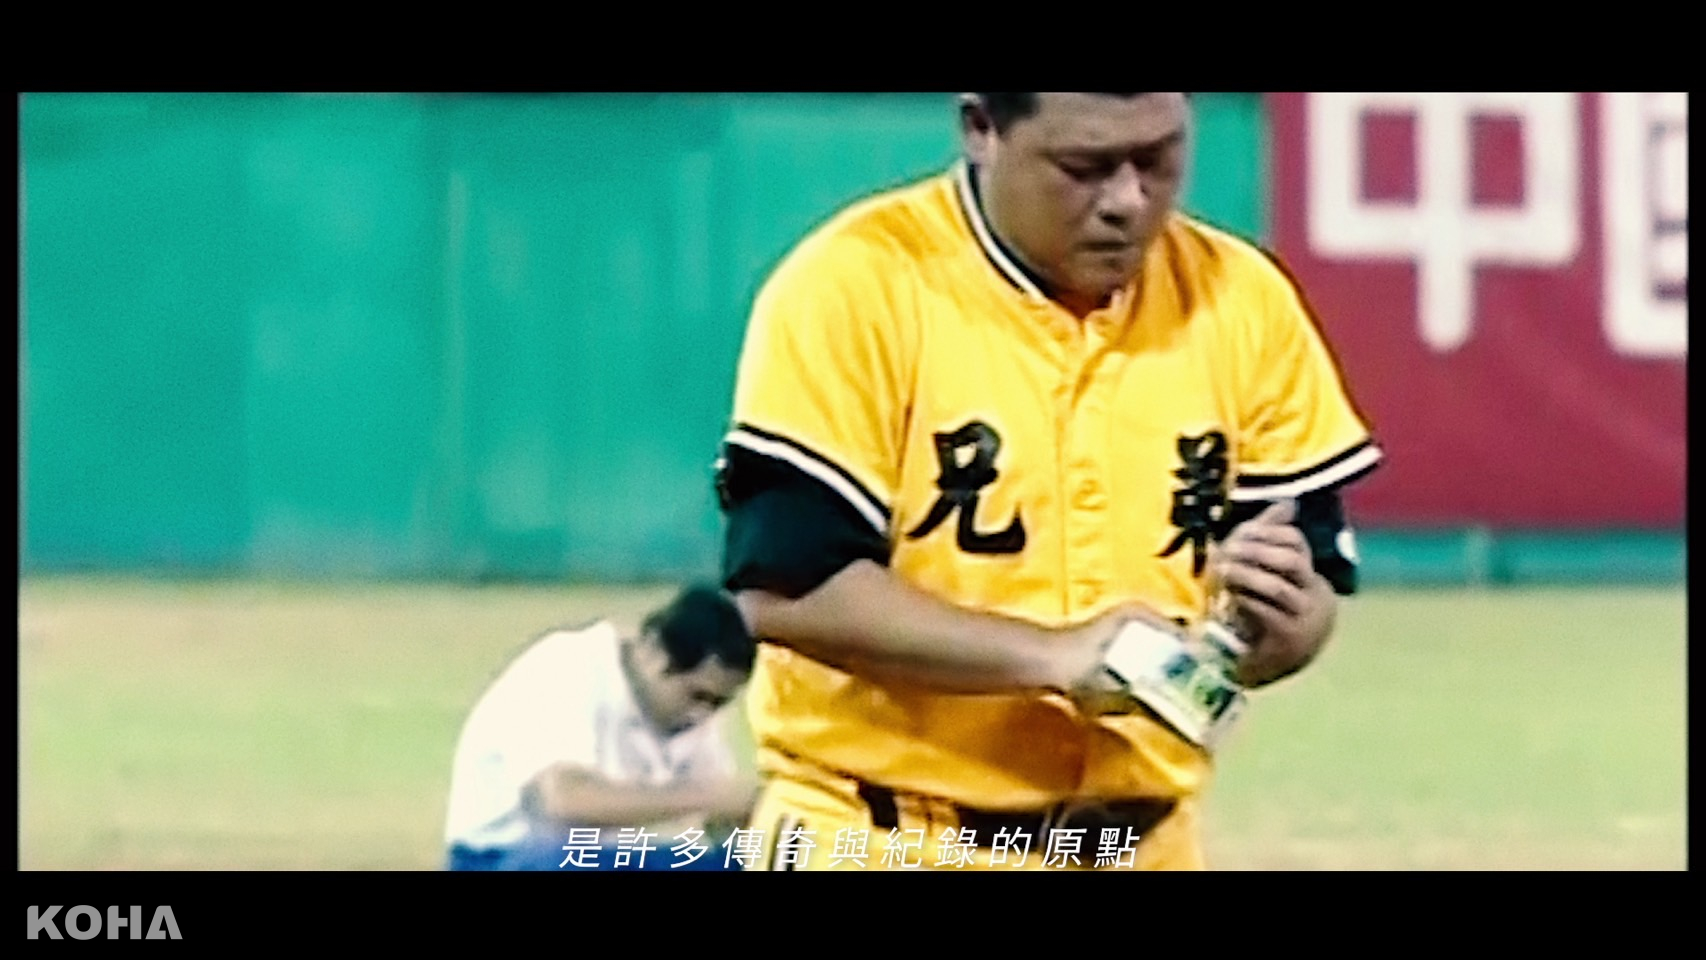 讀賣巨人軍90周年紀念台灣試合 第二波宣傳影片公開